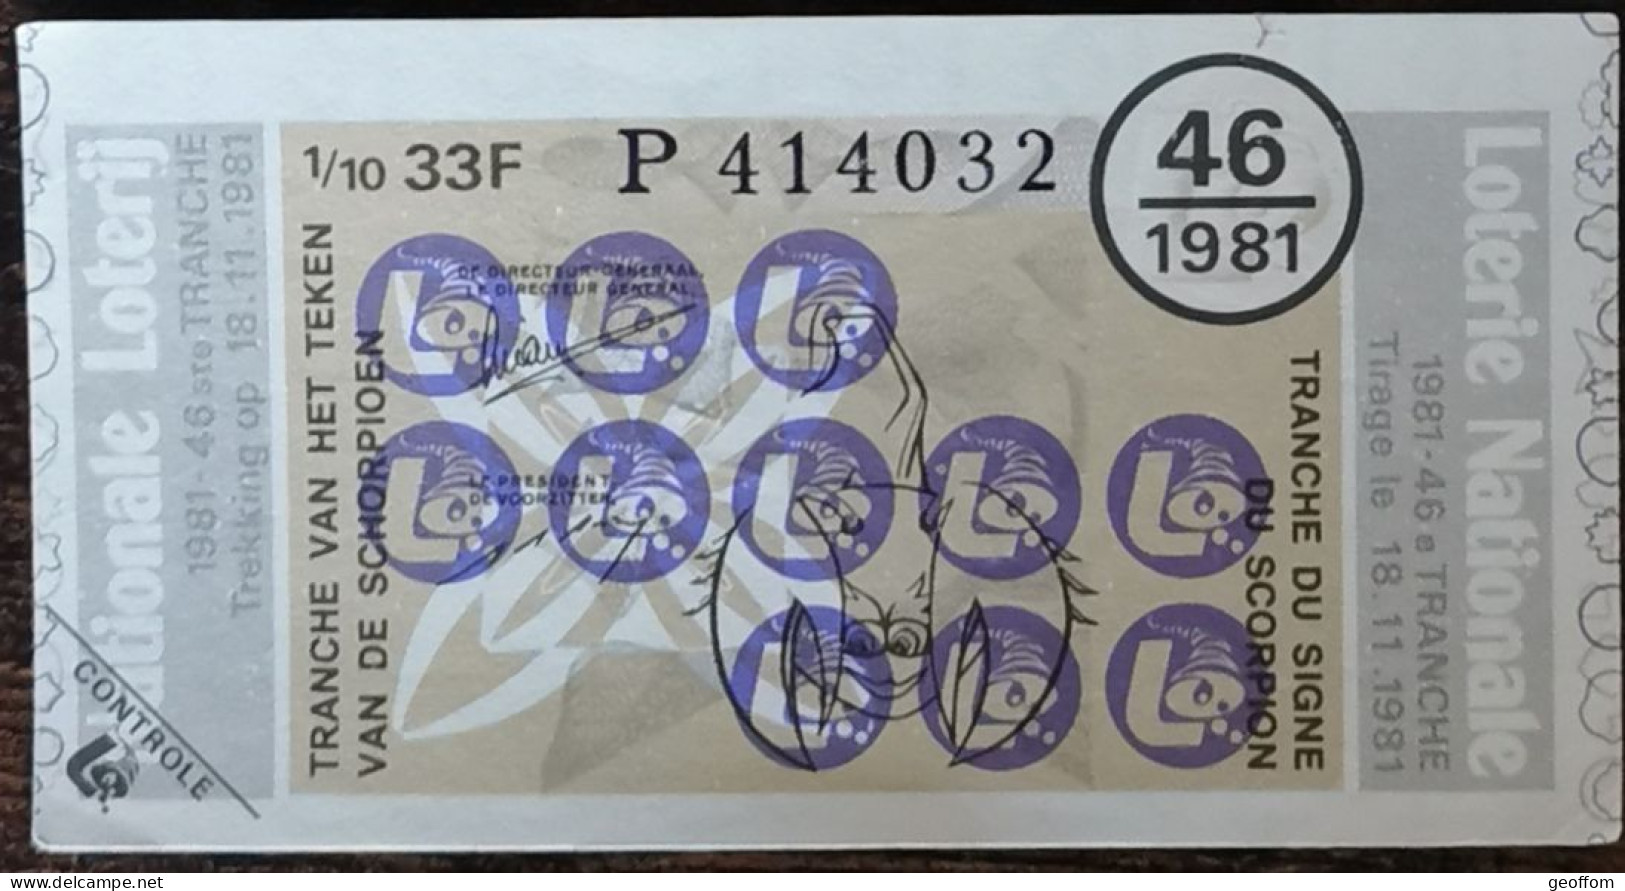 Billet De Loterie Nationale Belgique 1981 46e  Tranche Du Signe Du Scorpion - 18-11-1981 - Billetes De Lotería